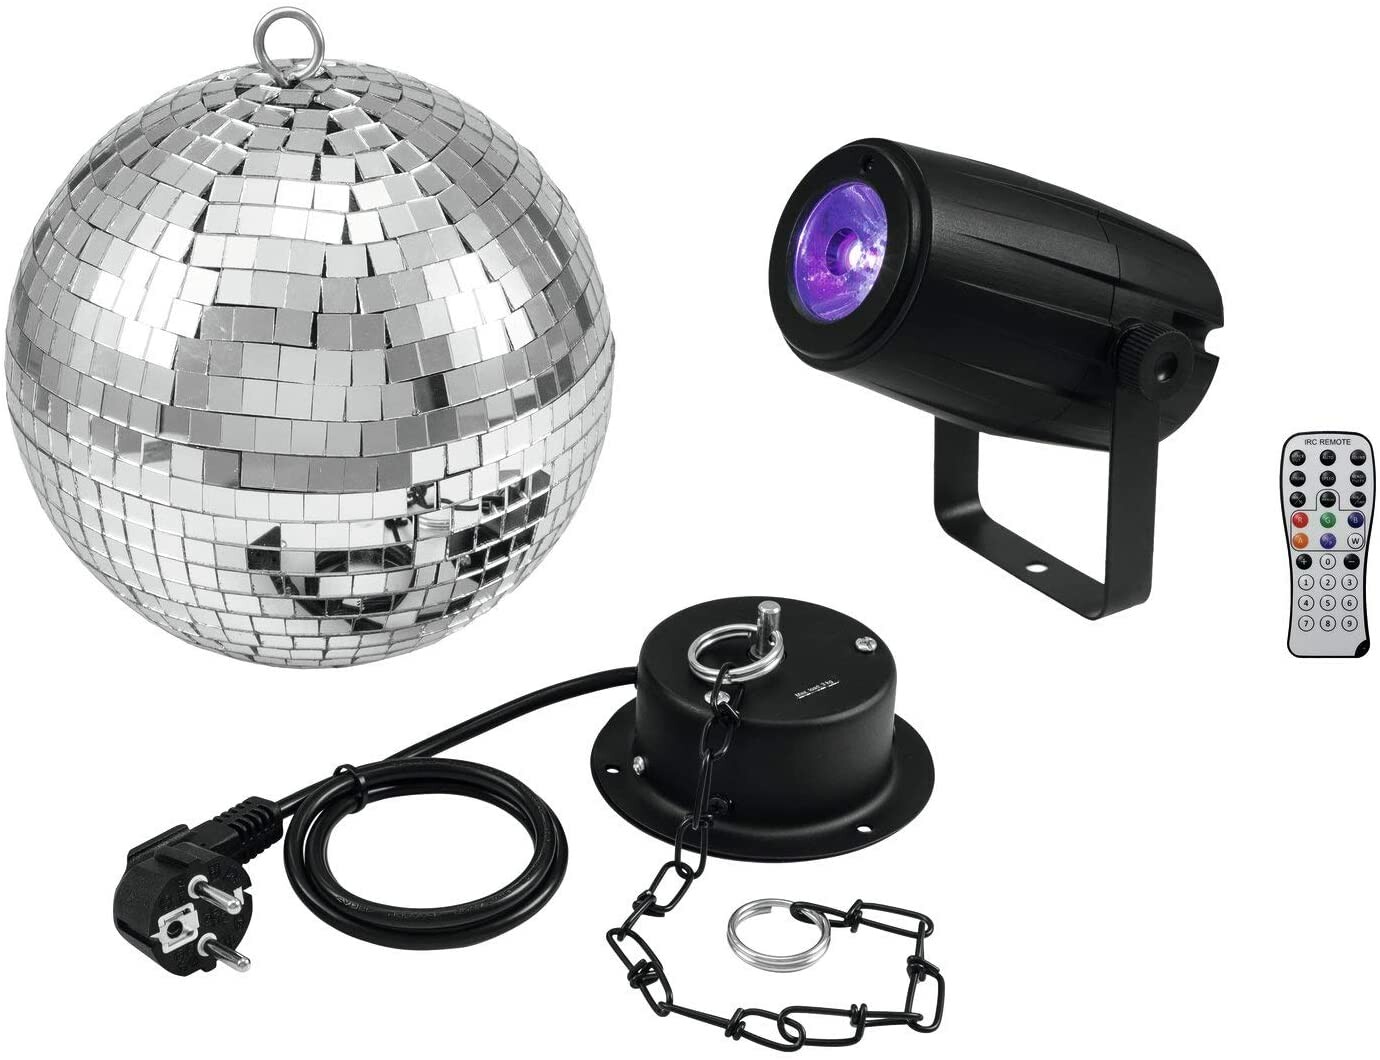 Projecteur disco à sphère à facettes rotative avec jeux de lumière